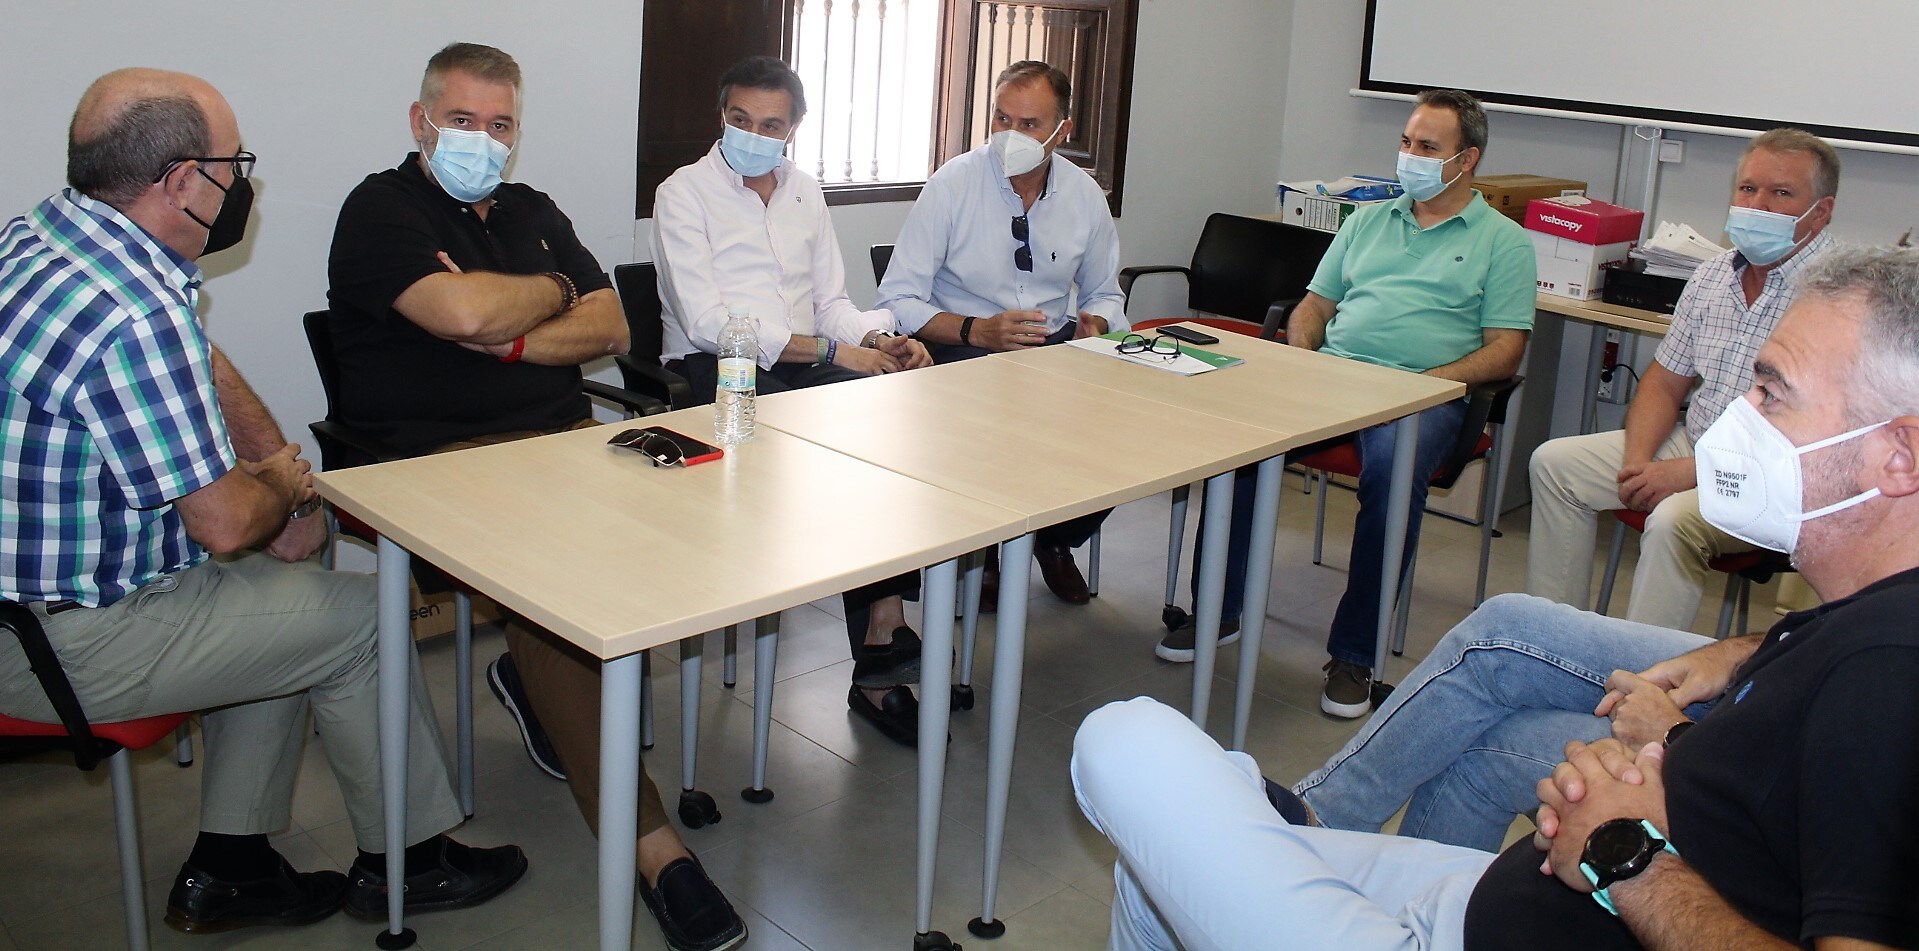 La oficina del Servicio Andaluz de Empleo de Andújar empieza a poner en marcha la experiencia piloto de un nuevo modelo de gestión